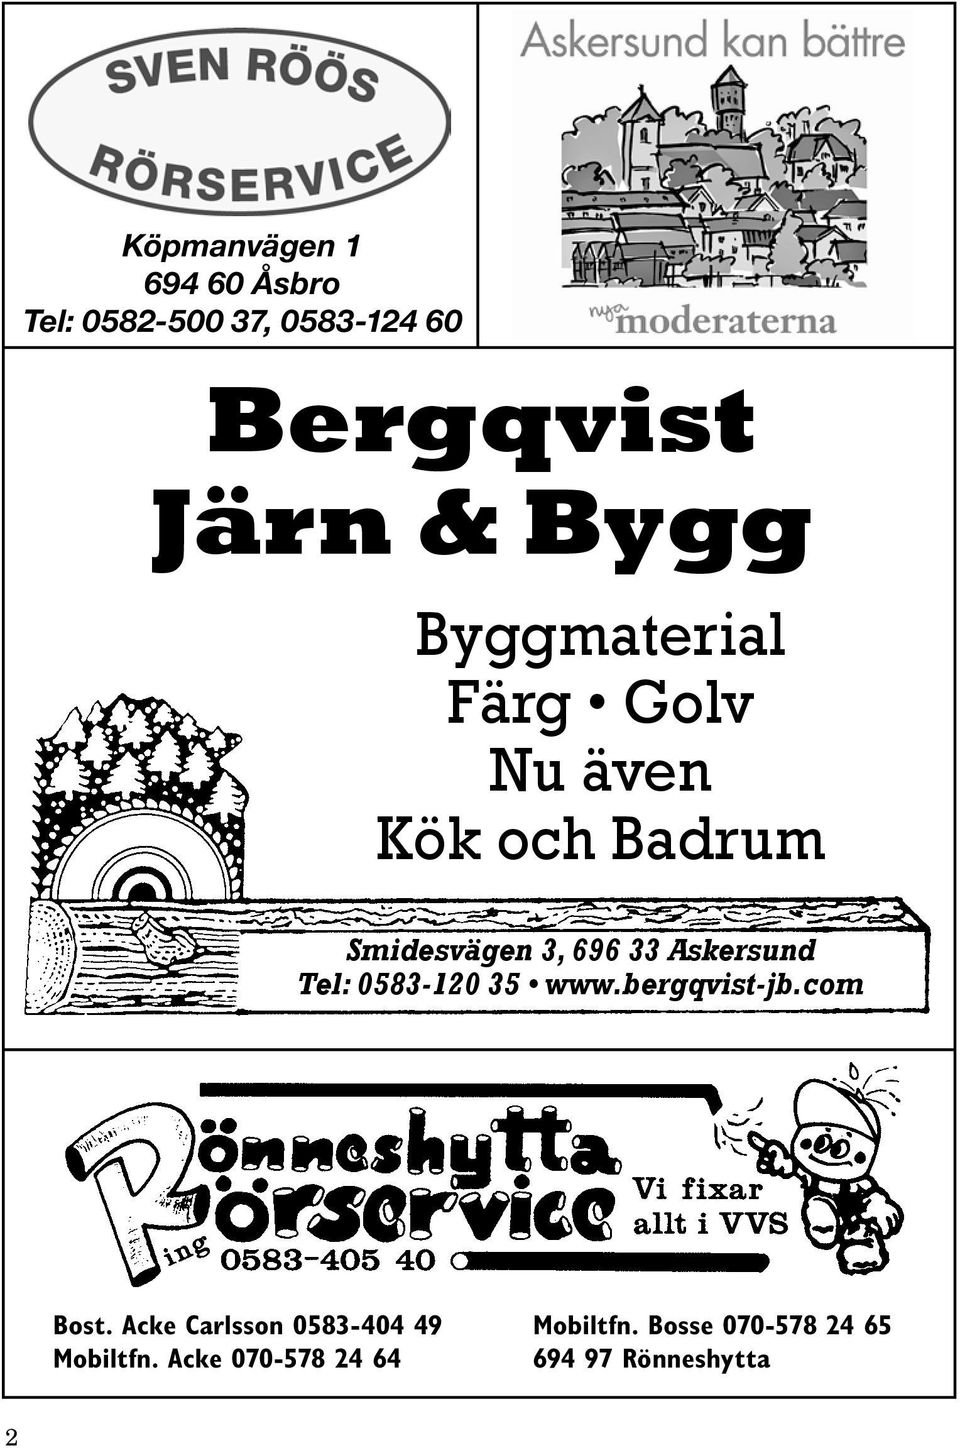 Askersund Tel: 0583-120 35 www.bergqvist-jb.com Bost.